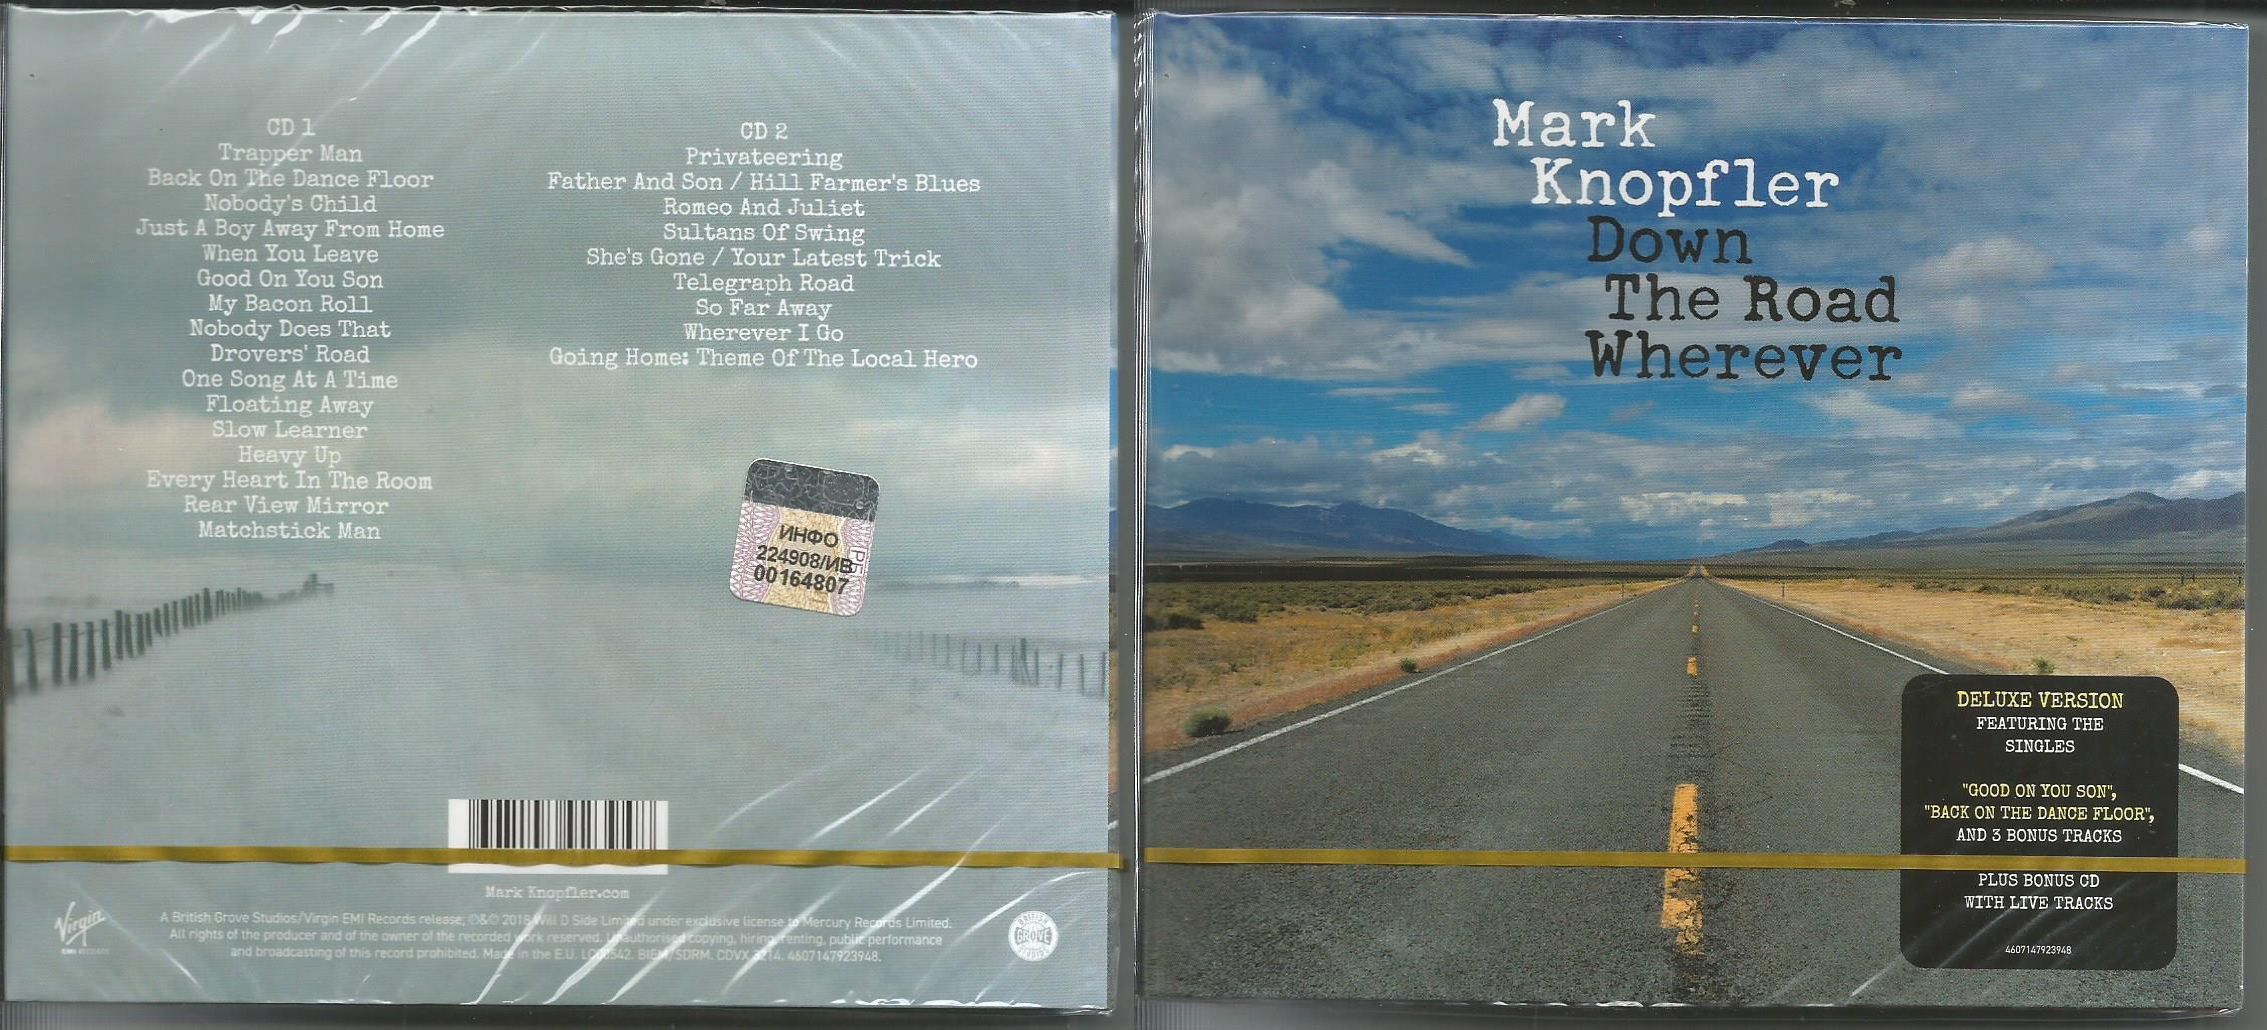 Bonus track песни. Mark Knopfler - 2018 - down the Road wherever обложка альбома.